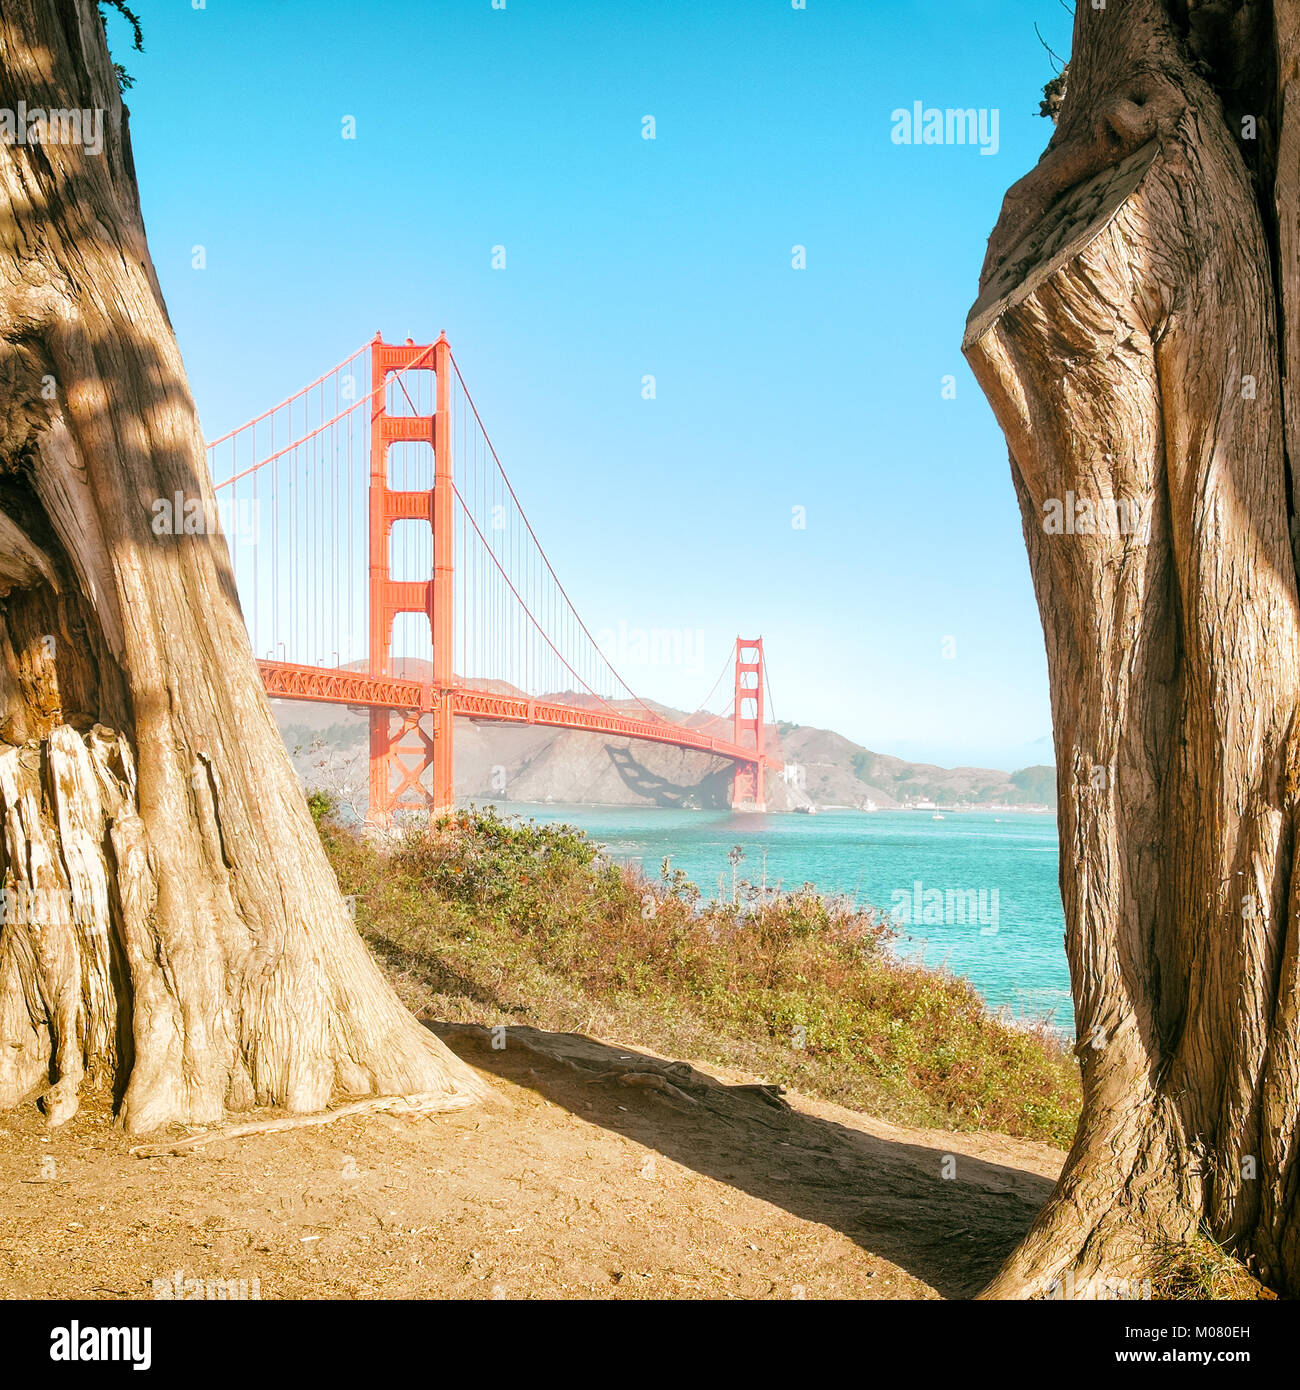 Golden Gate Bridge View durch die riesigen Eukalyptus Baumstämme eingerahmt. Sonnigen Tag, blauer Himmel, vintage Farbe. Quadratischen Format. Stockfoto